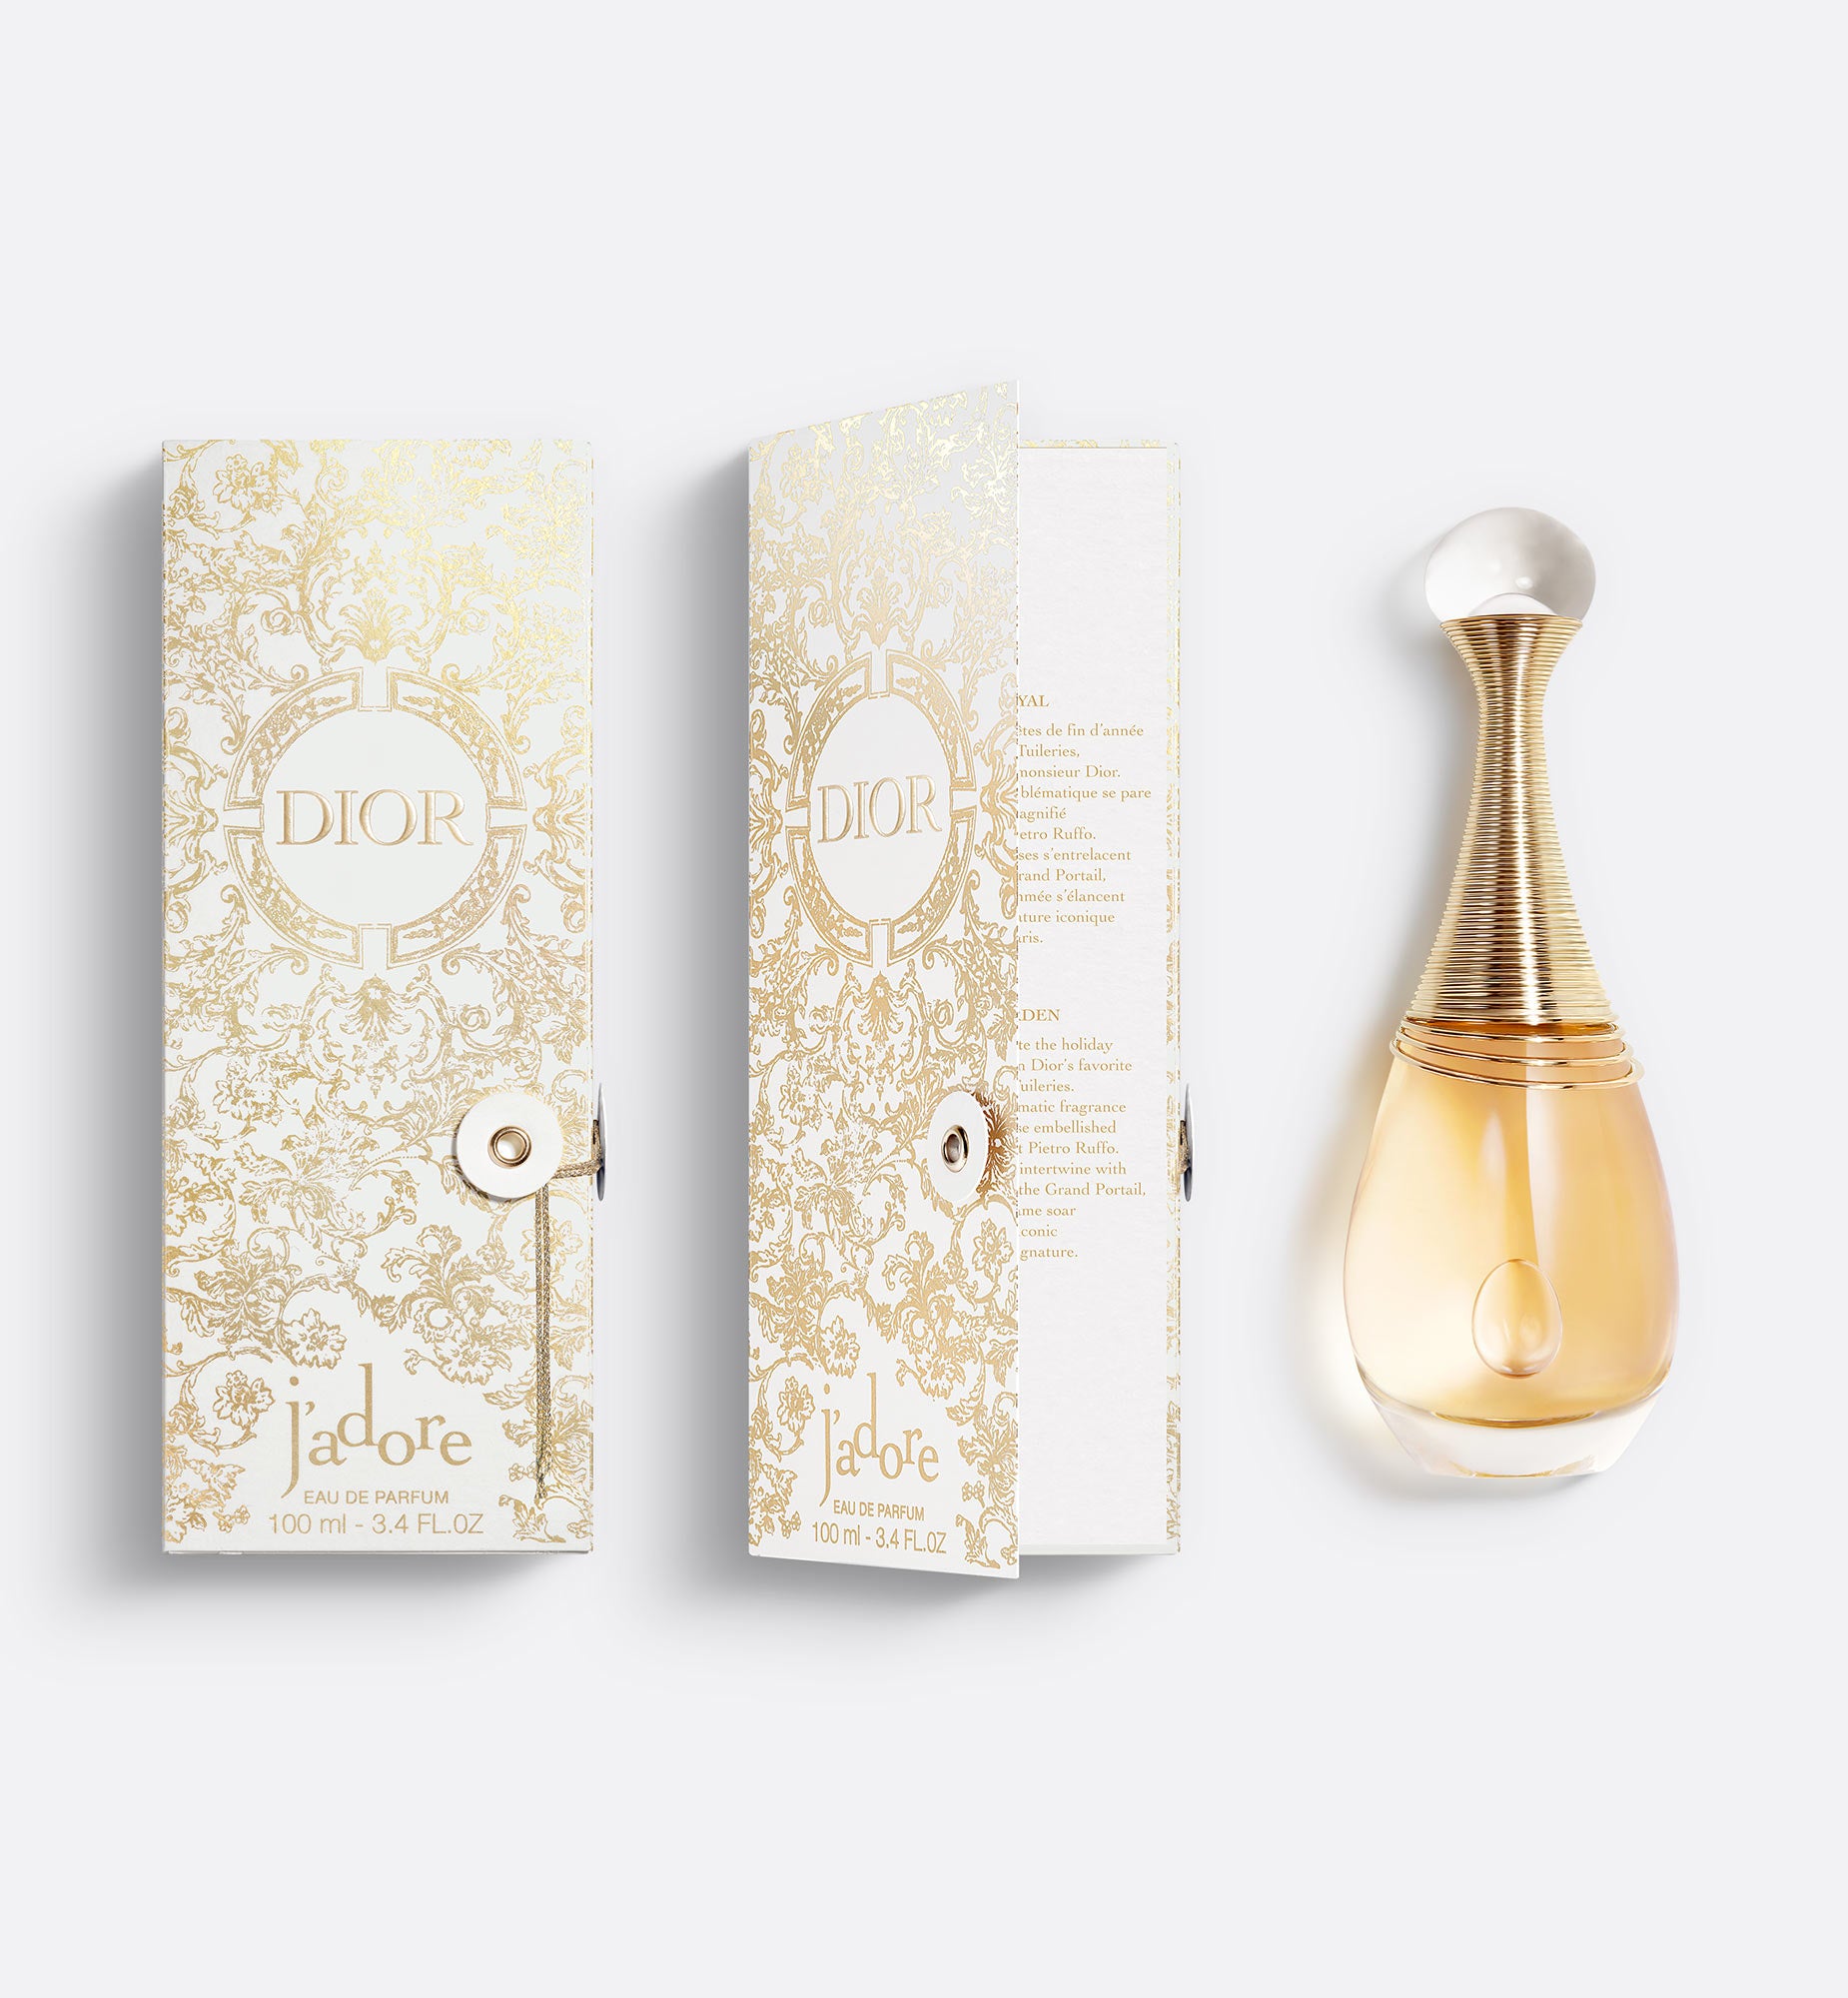 J’adore Eau de Parfum - Limited Edition | Eau de Parfum - Floral and Sensual Notes - Gift Case